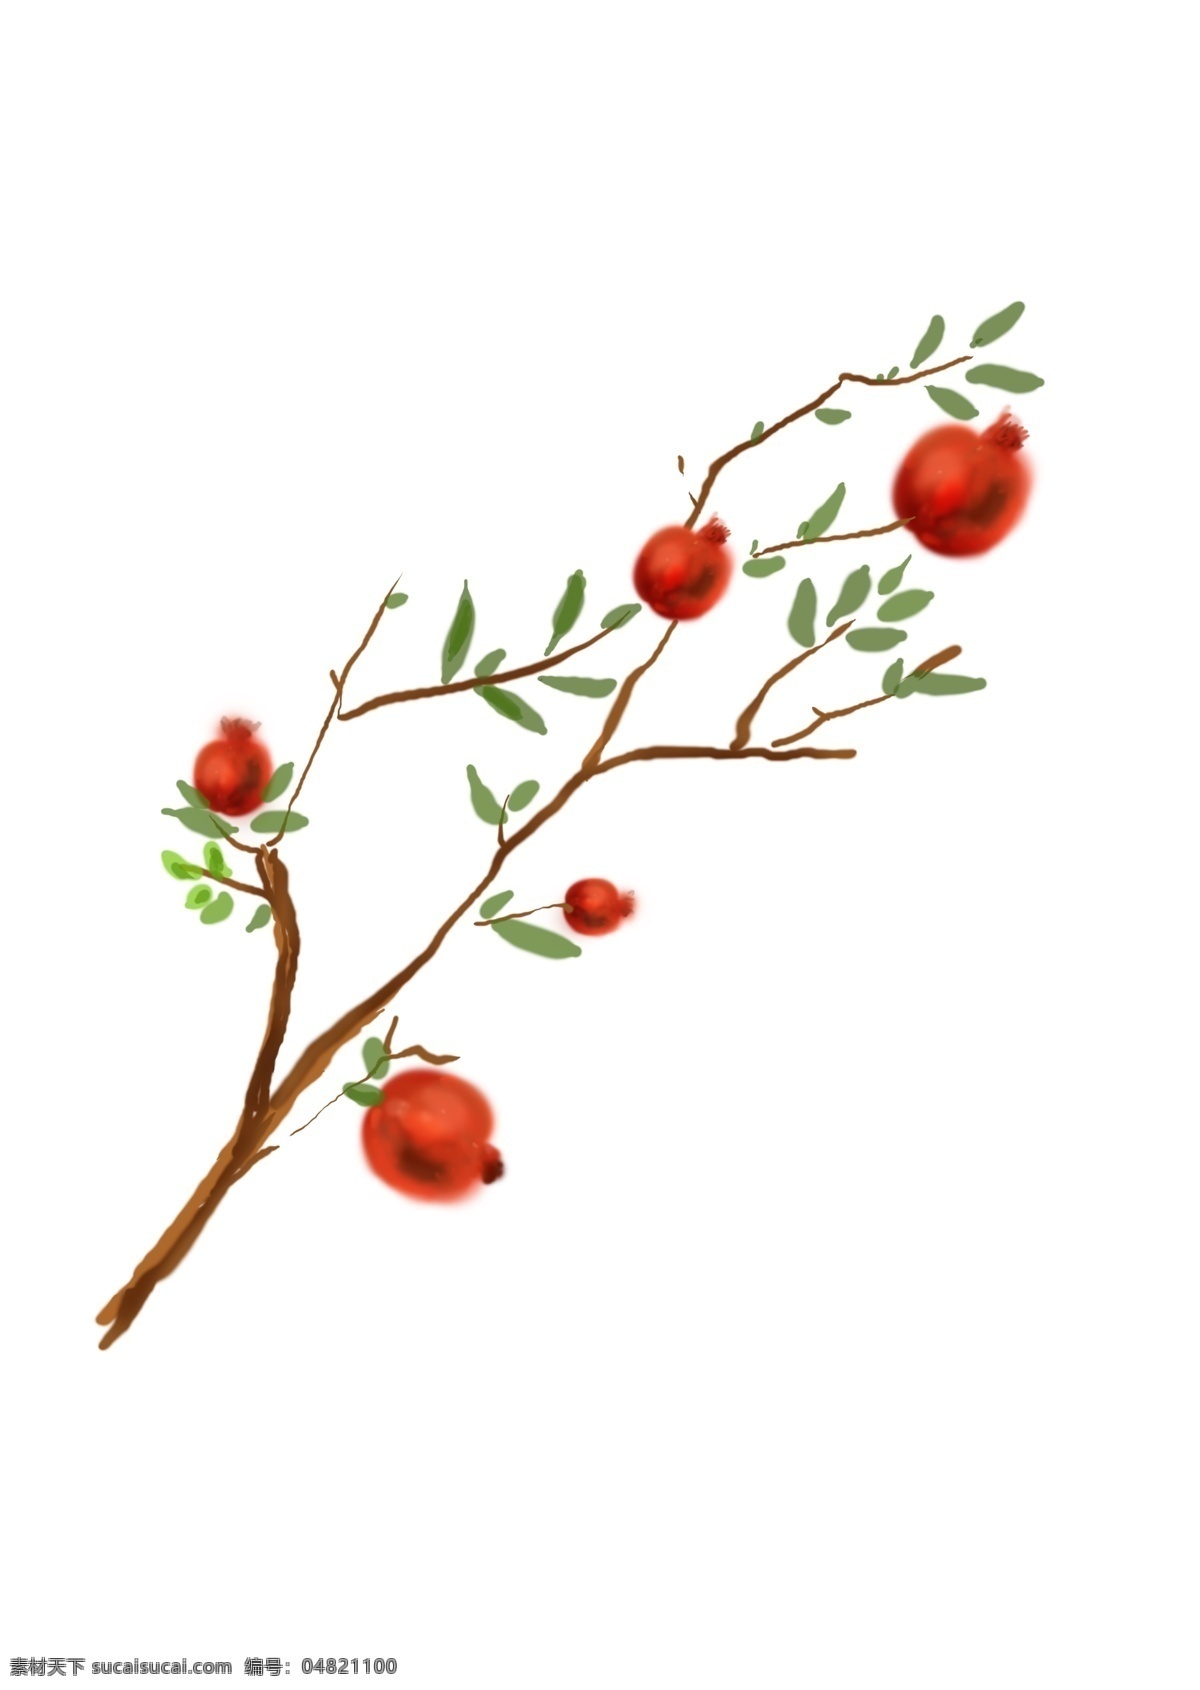 中国 水墨 手绘 石榴树 石榴 水果 中国风 传统 水粉 国画 绿色 红色 植物 种植 培育 插画 线条 美味